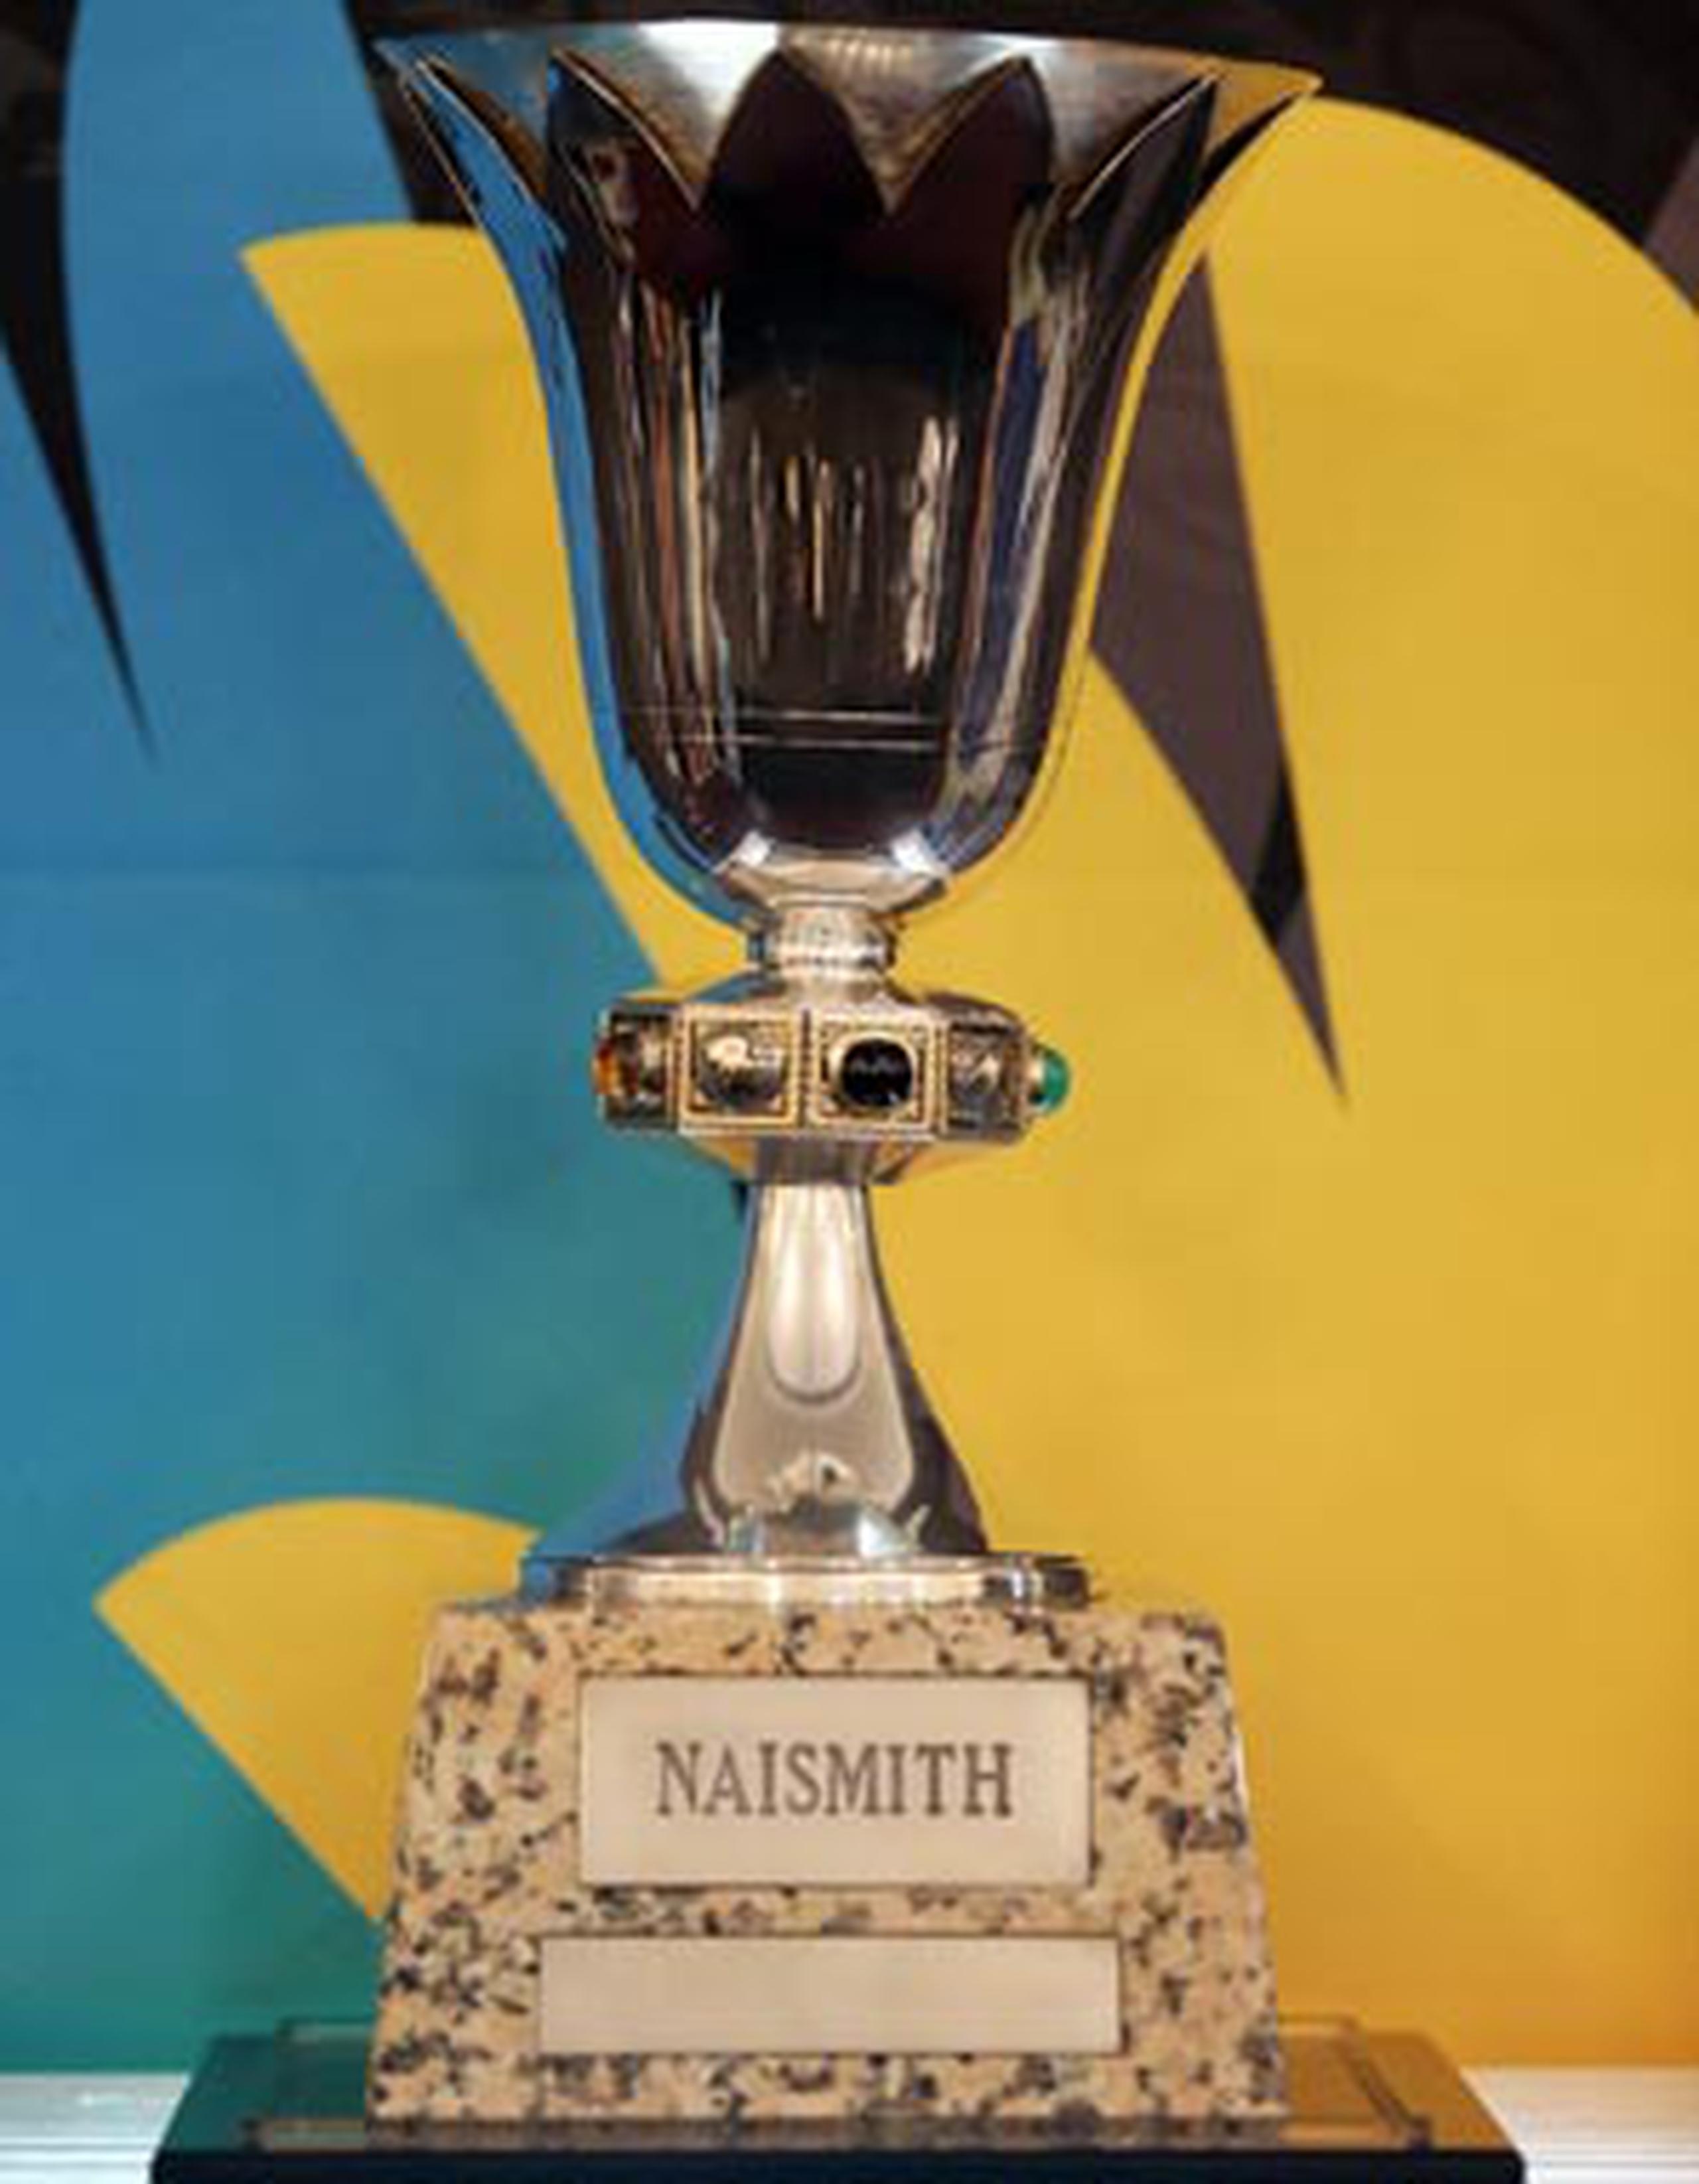 También se le conoce como el Trofeo Naismith, en honor a James Naismith, inventor del baloncesto. (juan.martinez@gfrmedia.com)